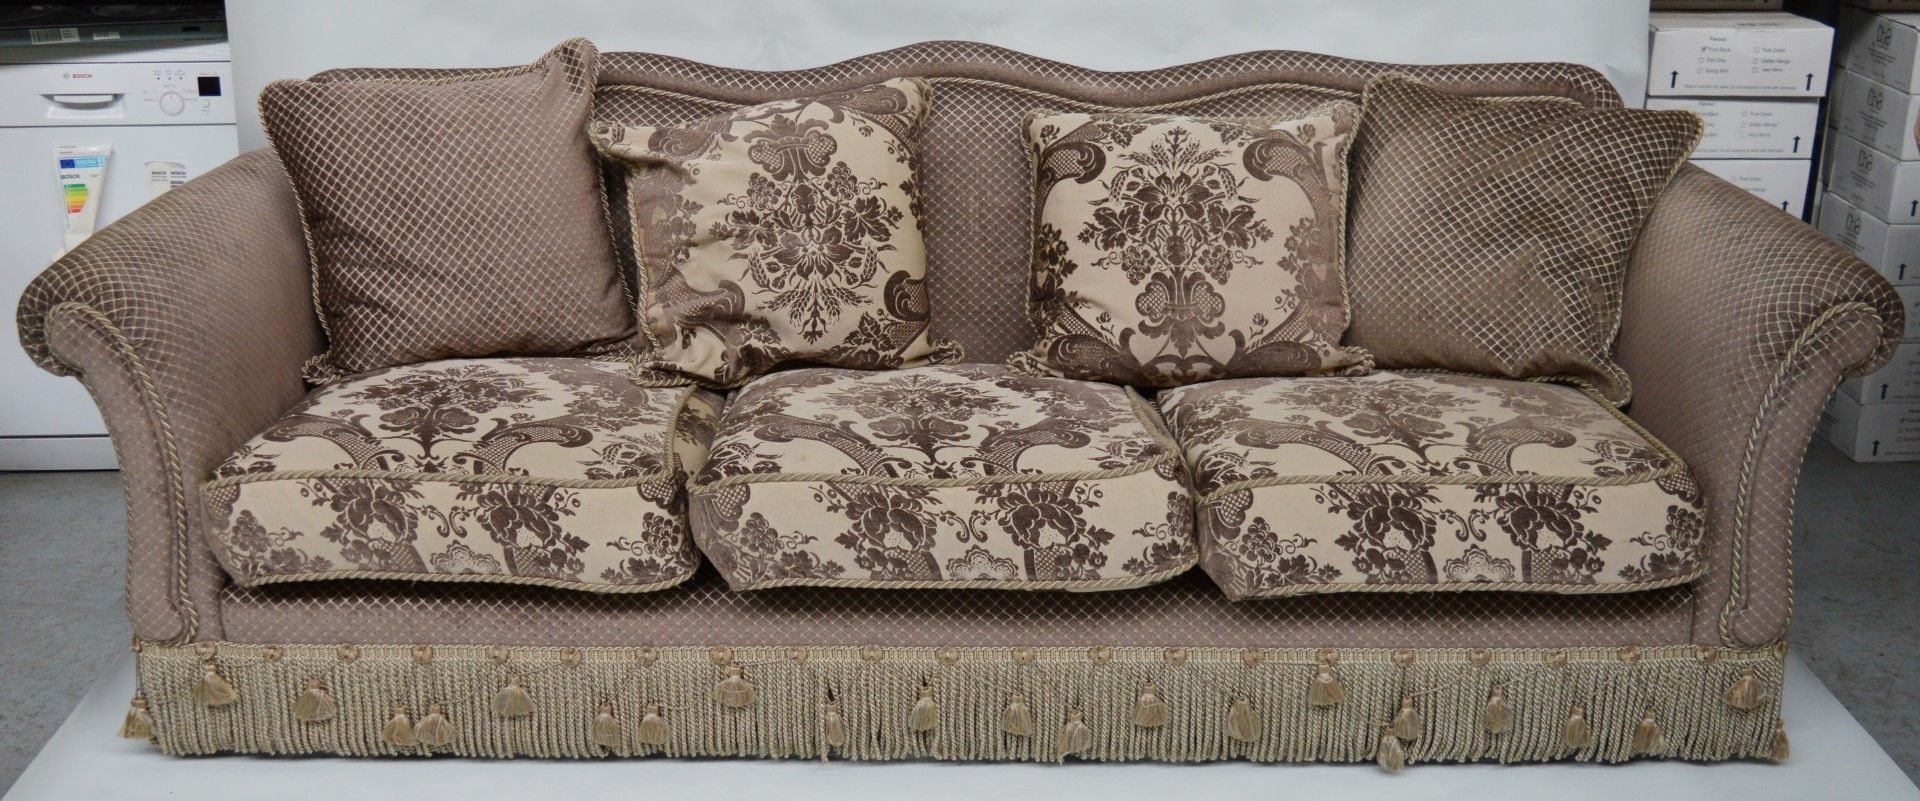 1 x Parker & Farr Abigail Special Sofa - Dimensions W240 x H87 x D89cm - Ref: 4081161 - CL007 -